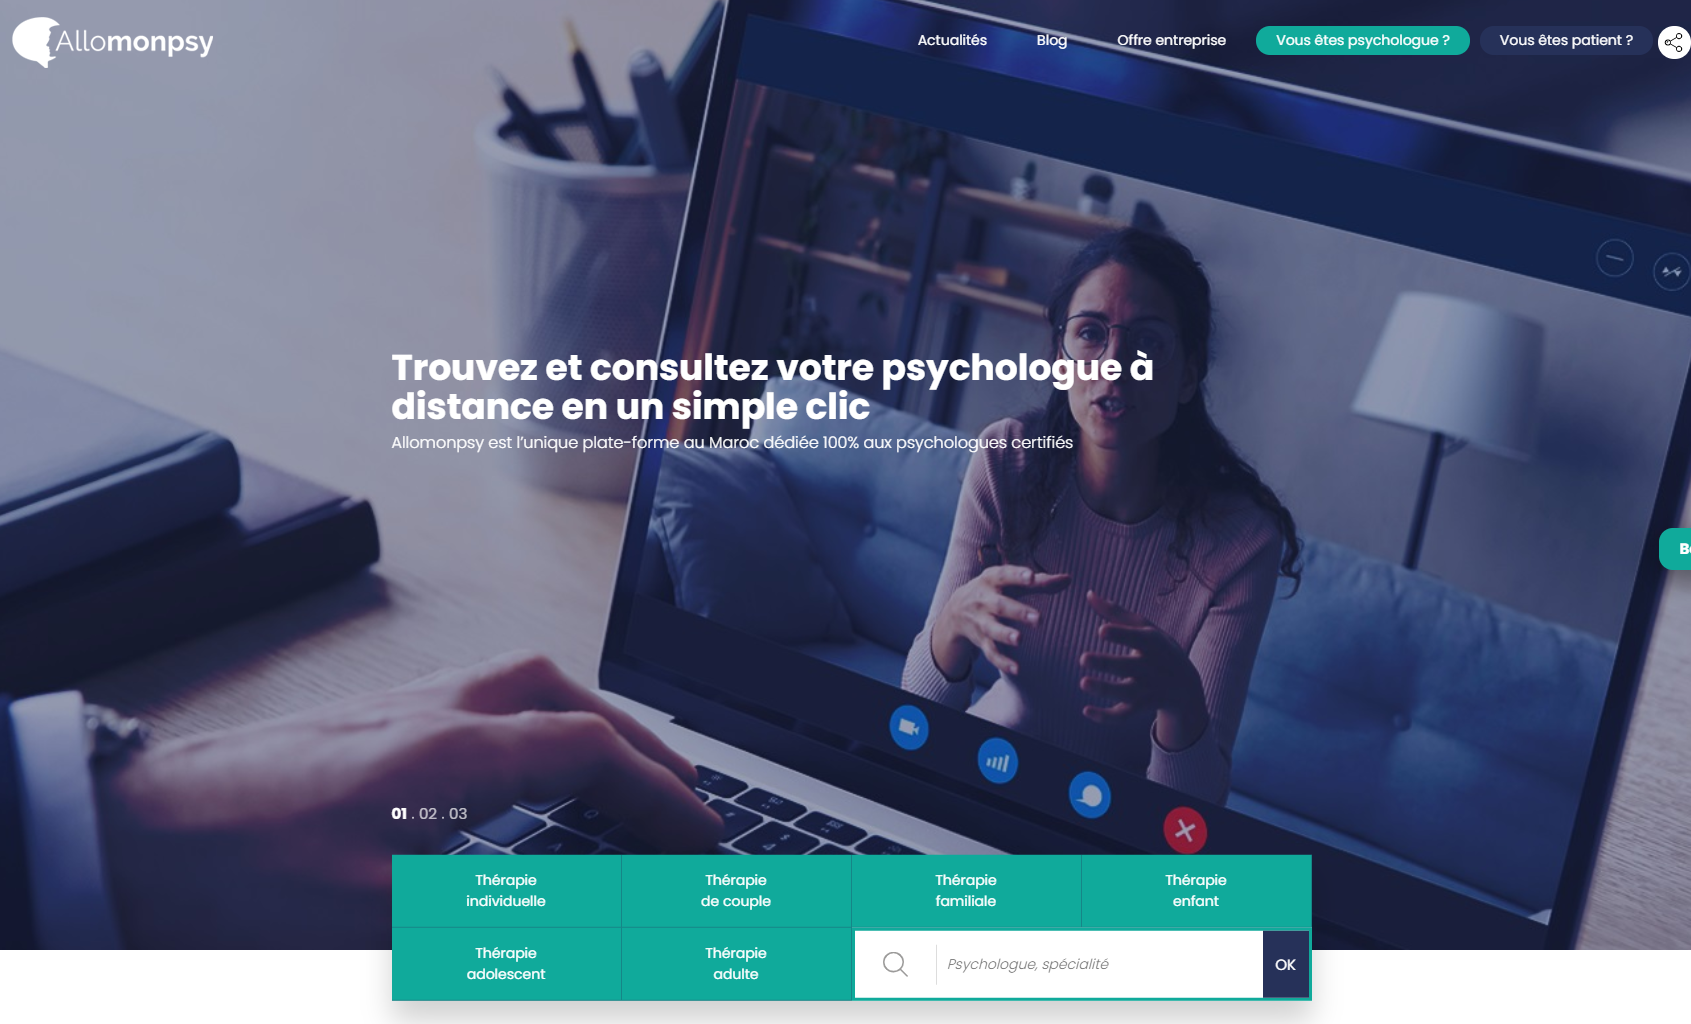 Allomonpsy démocratise la consultation psychologique en ligne aux Marocains et aux patients du Monde